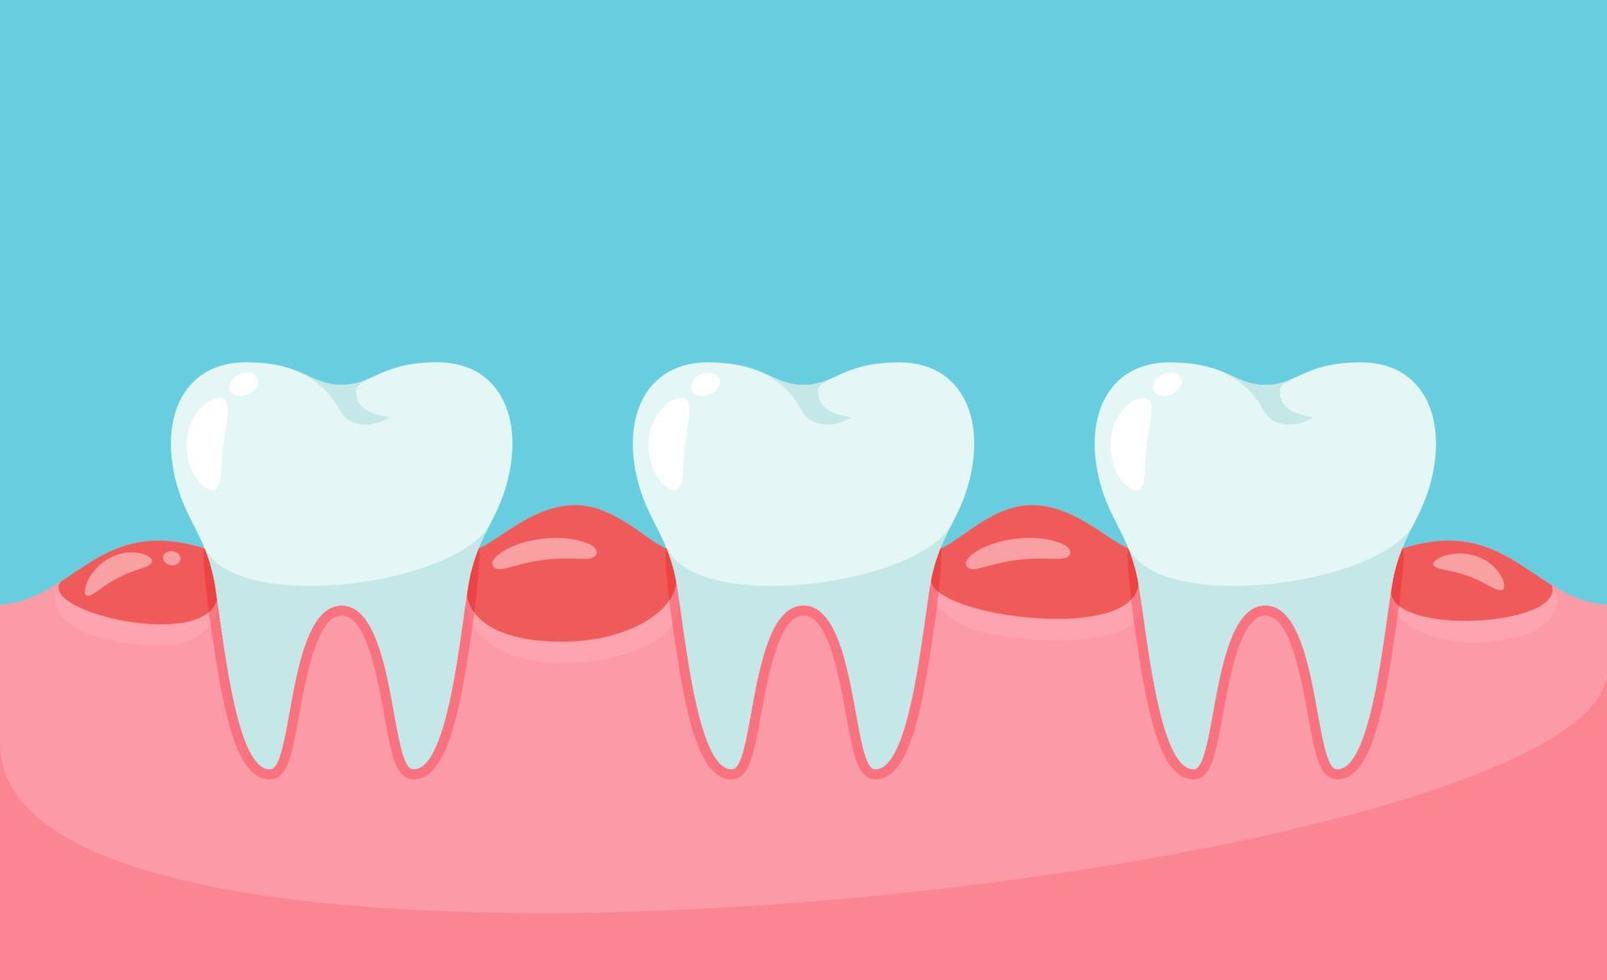 Vektor geschwollene Zähne. ungesundes Zahnfleisch